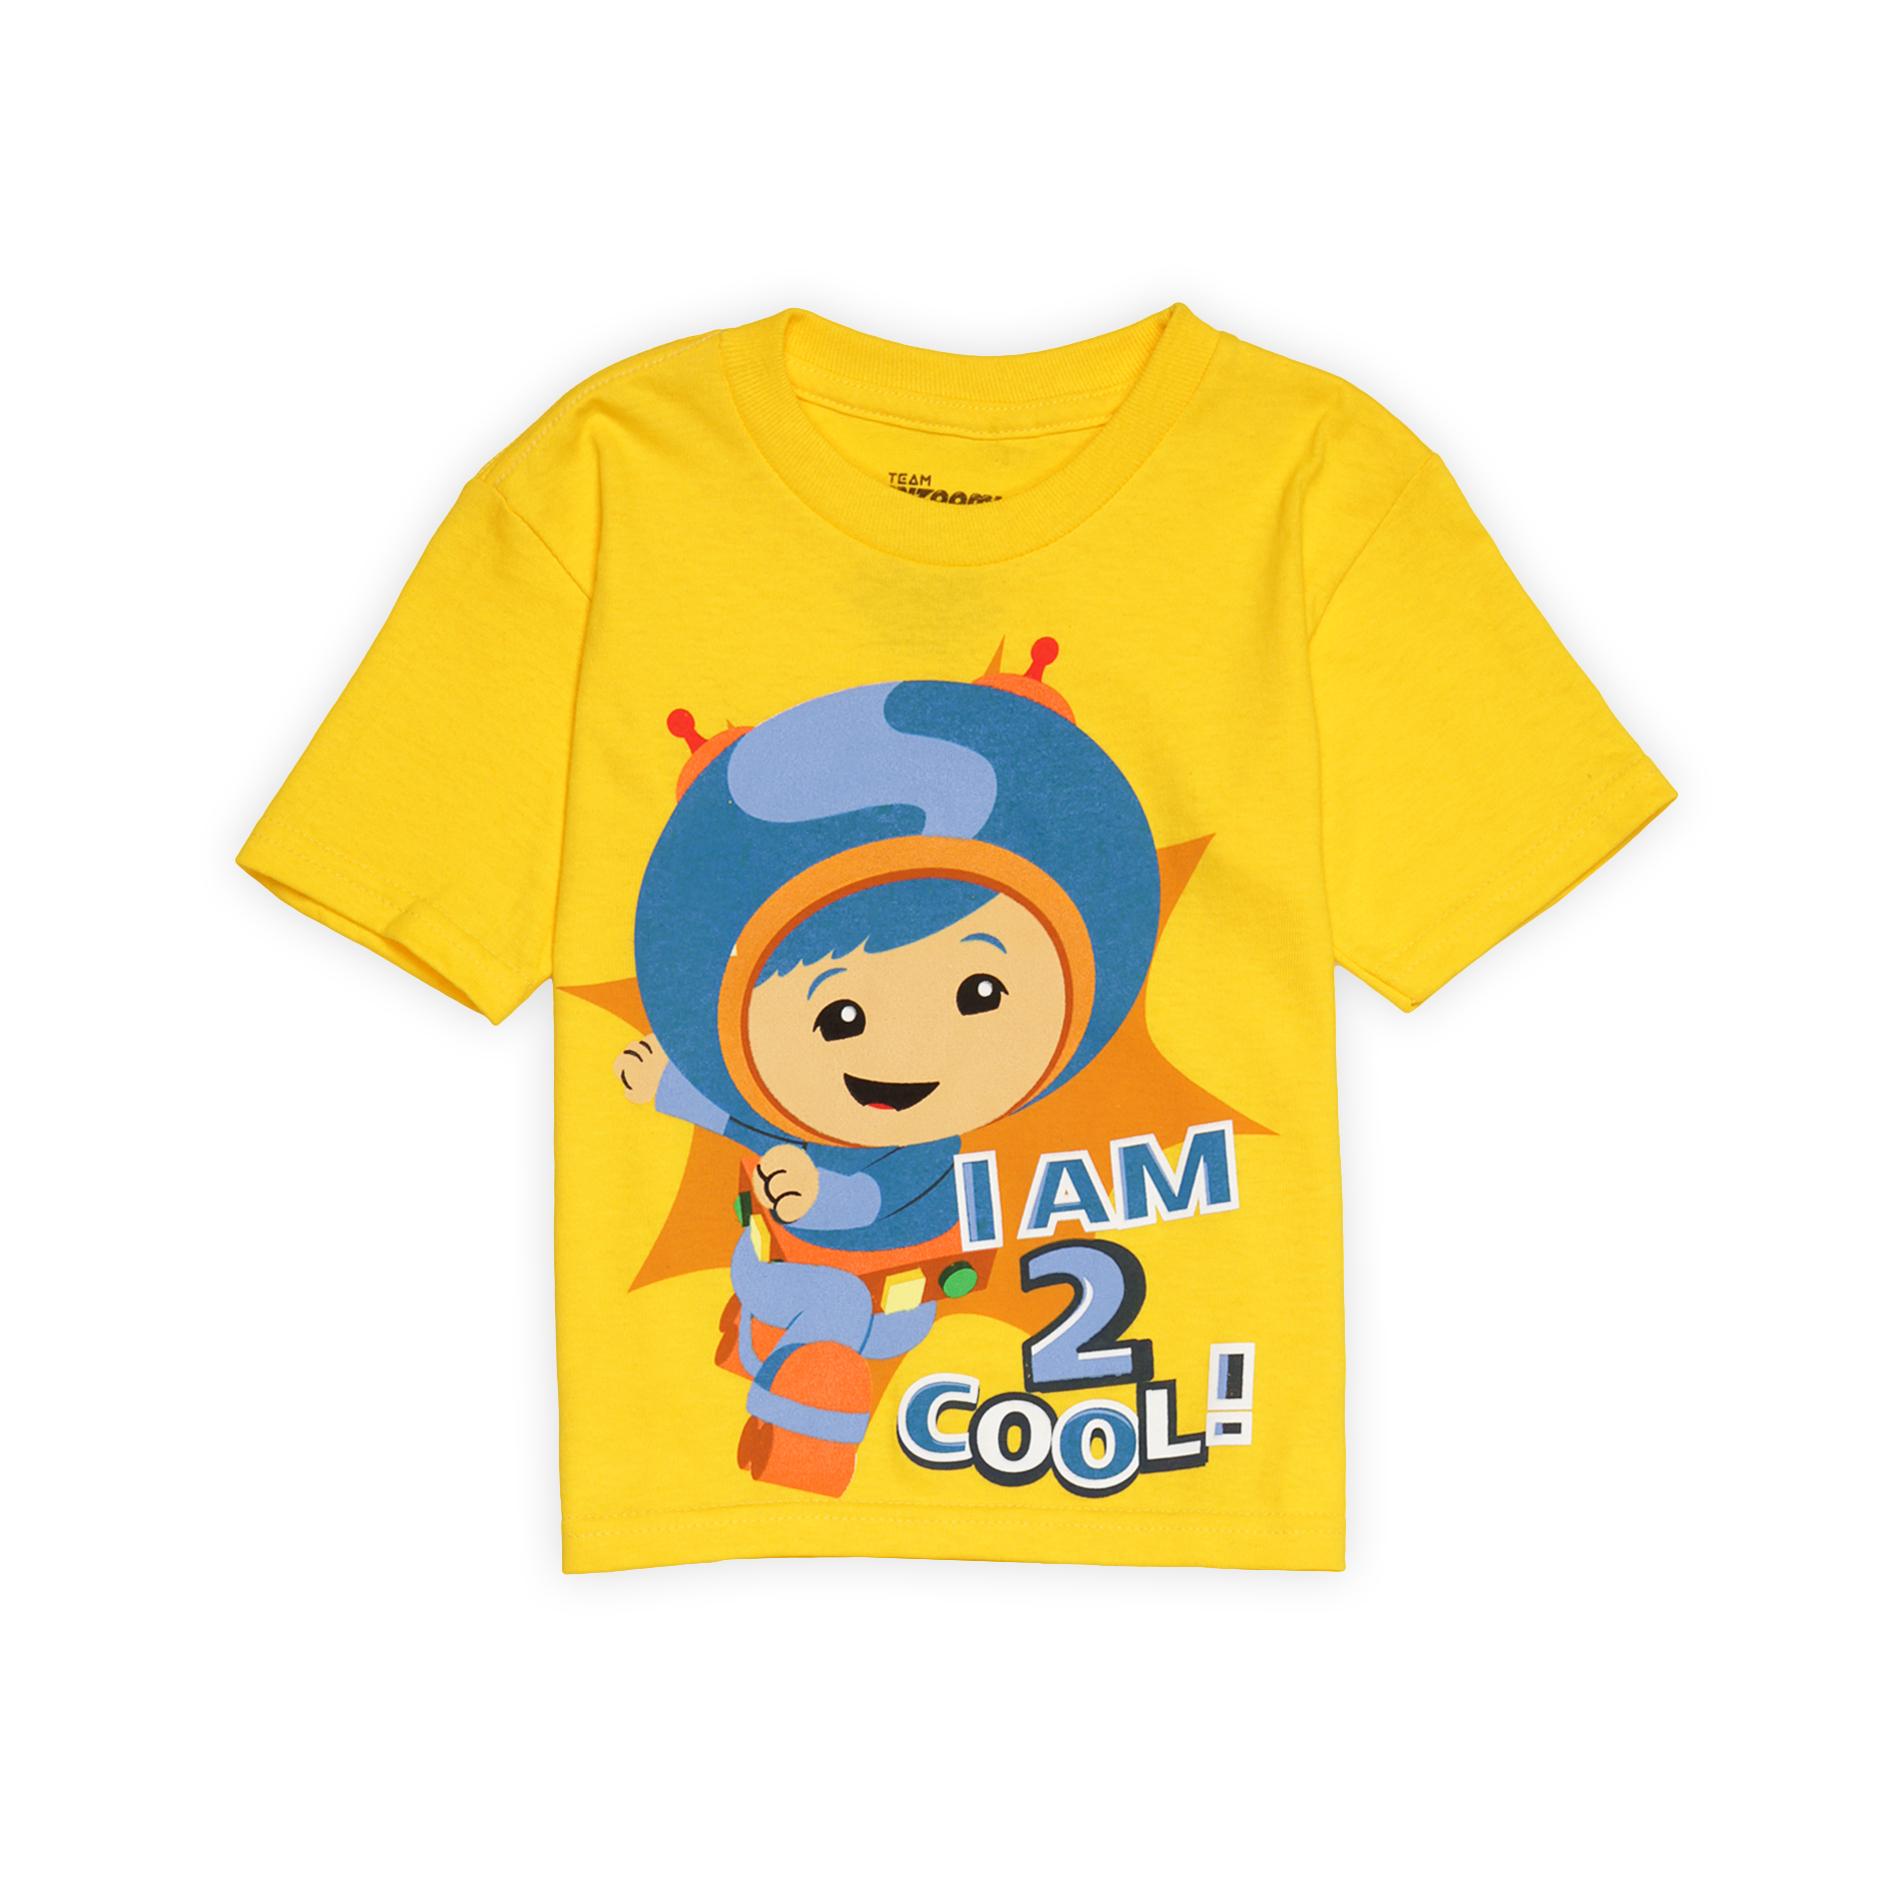 Nickelodeon Toddler Boy's Graphic T-Shirt - Geo